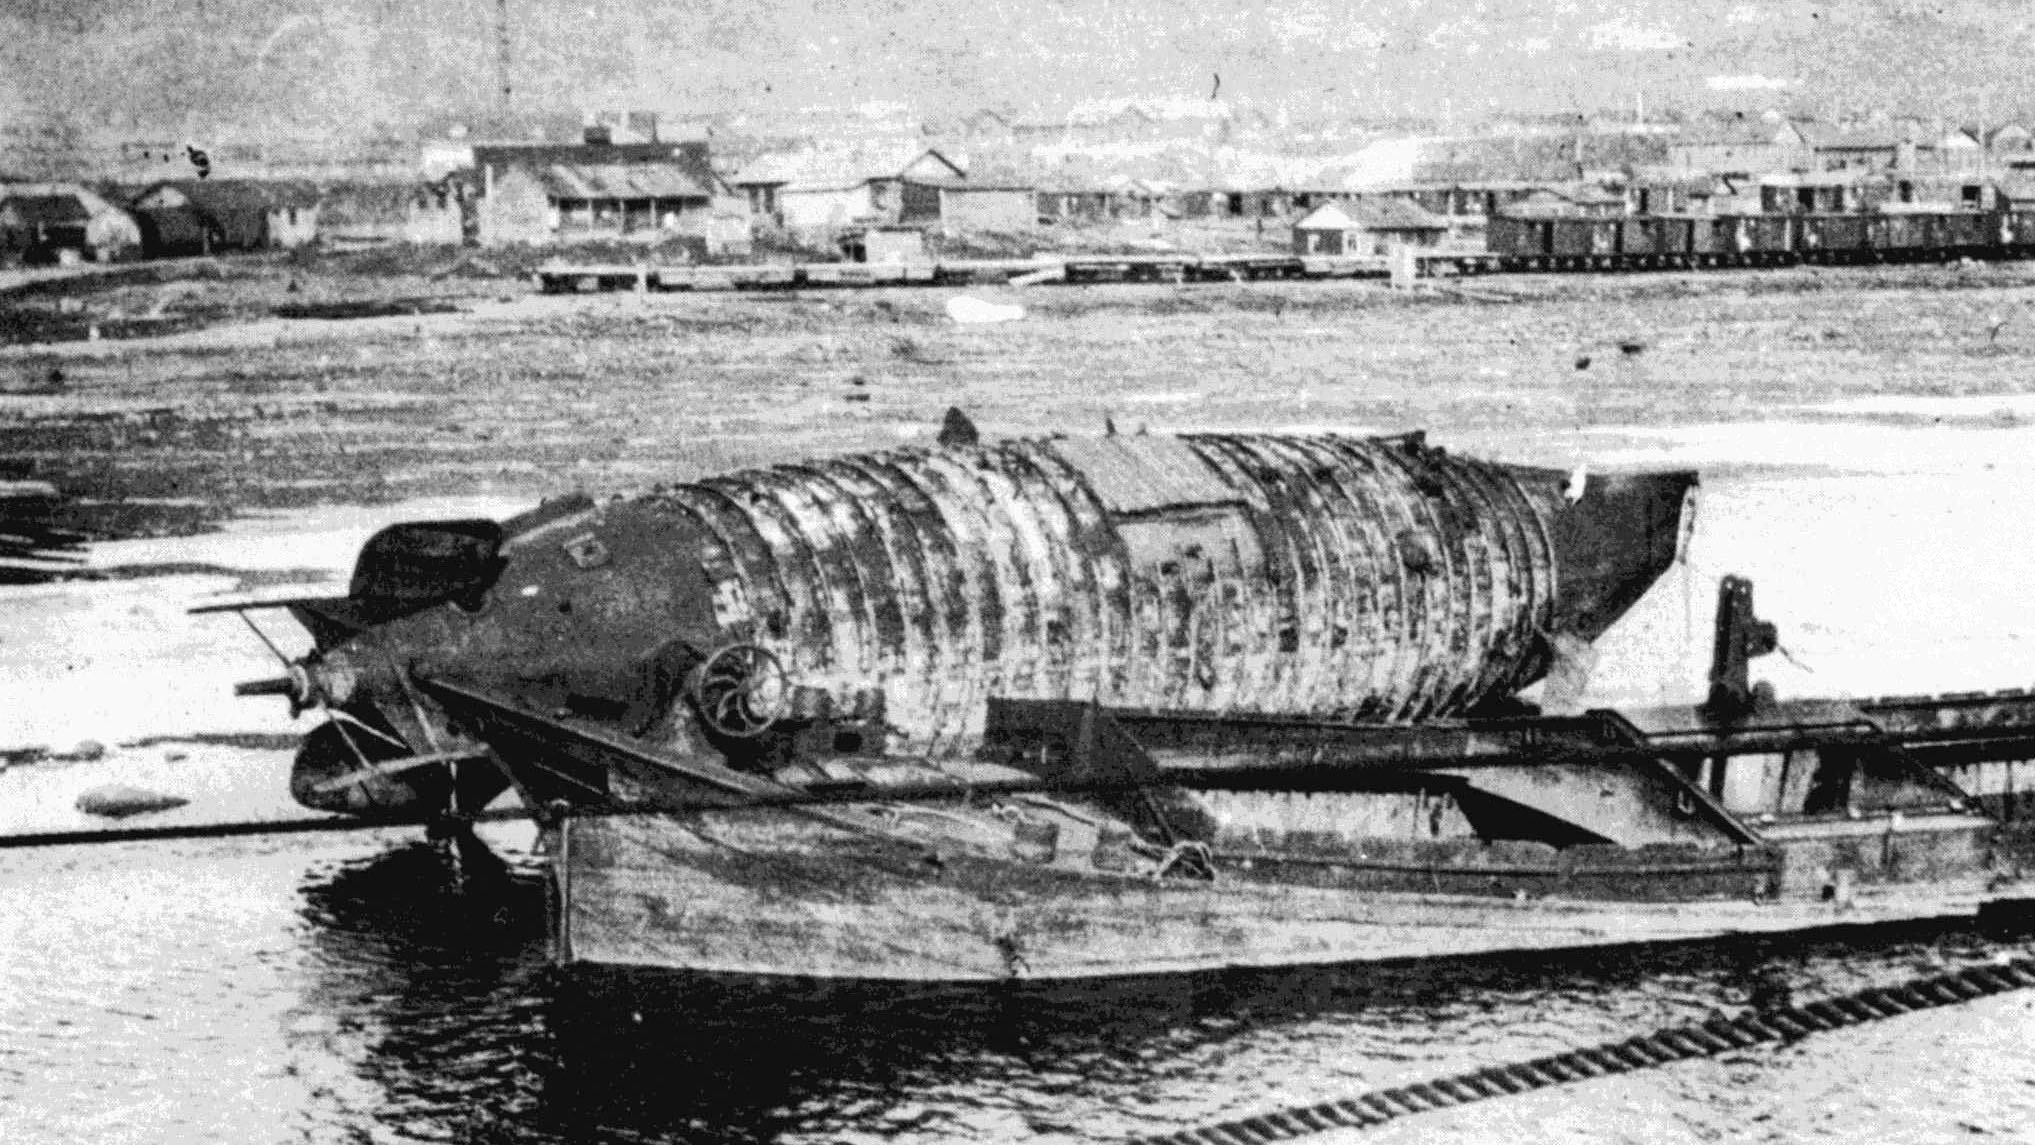 Дельфин_Мурманск_1919 г.jpg